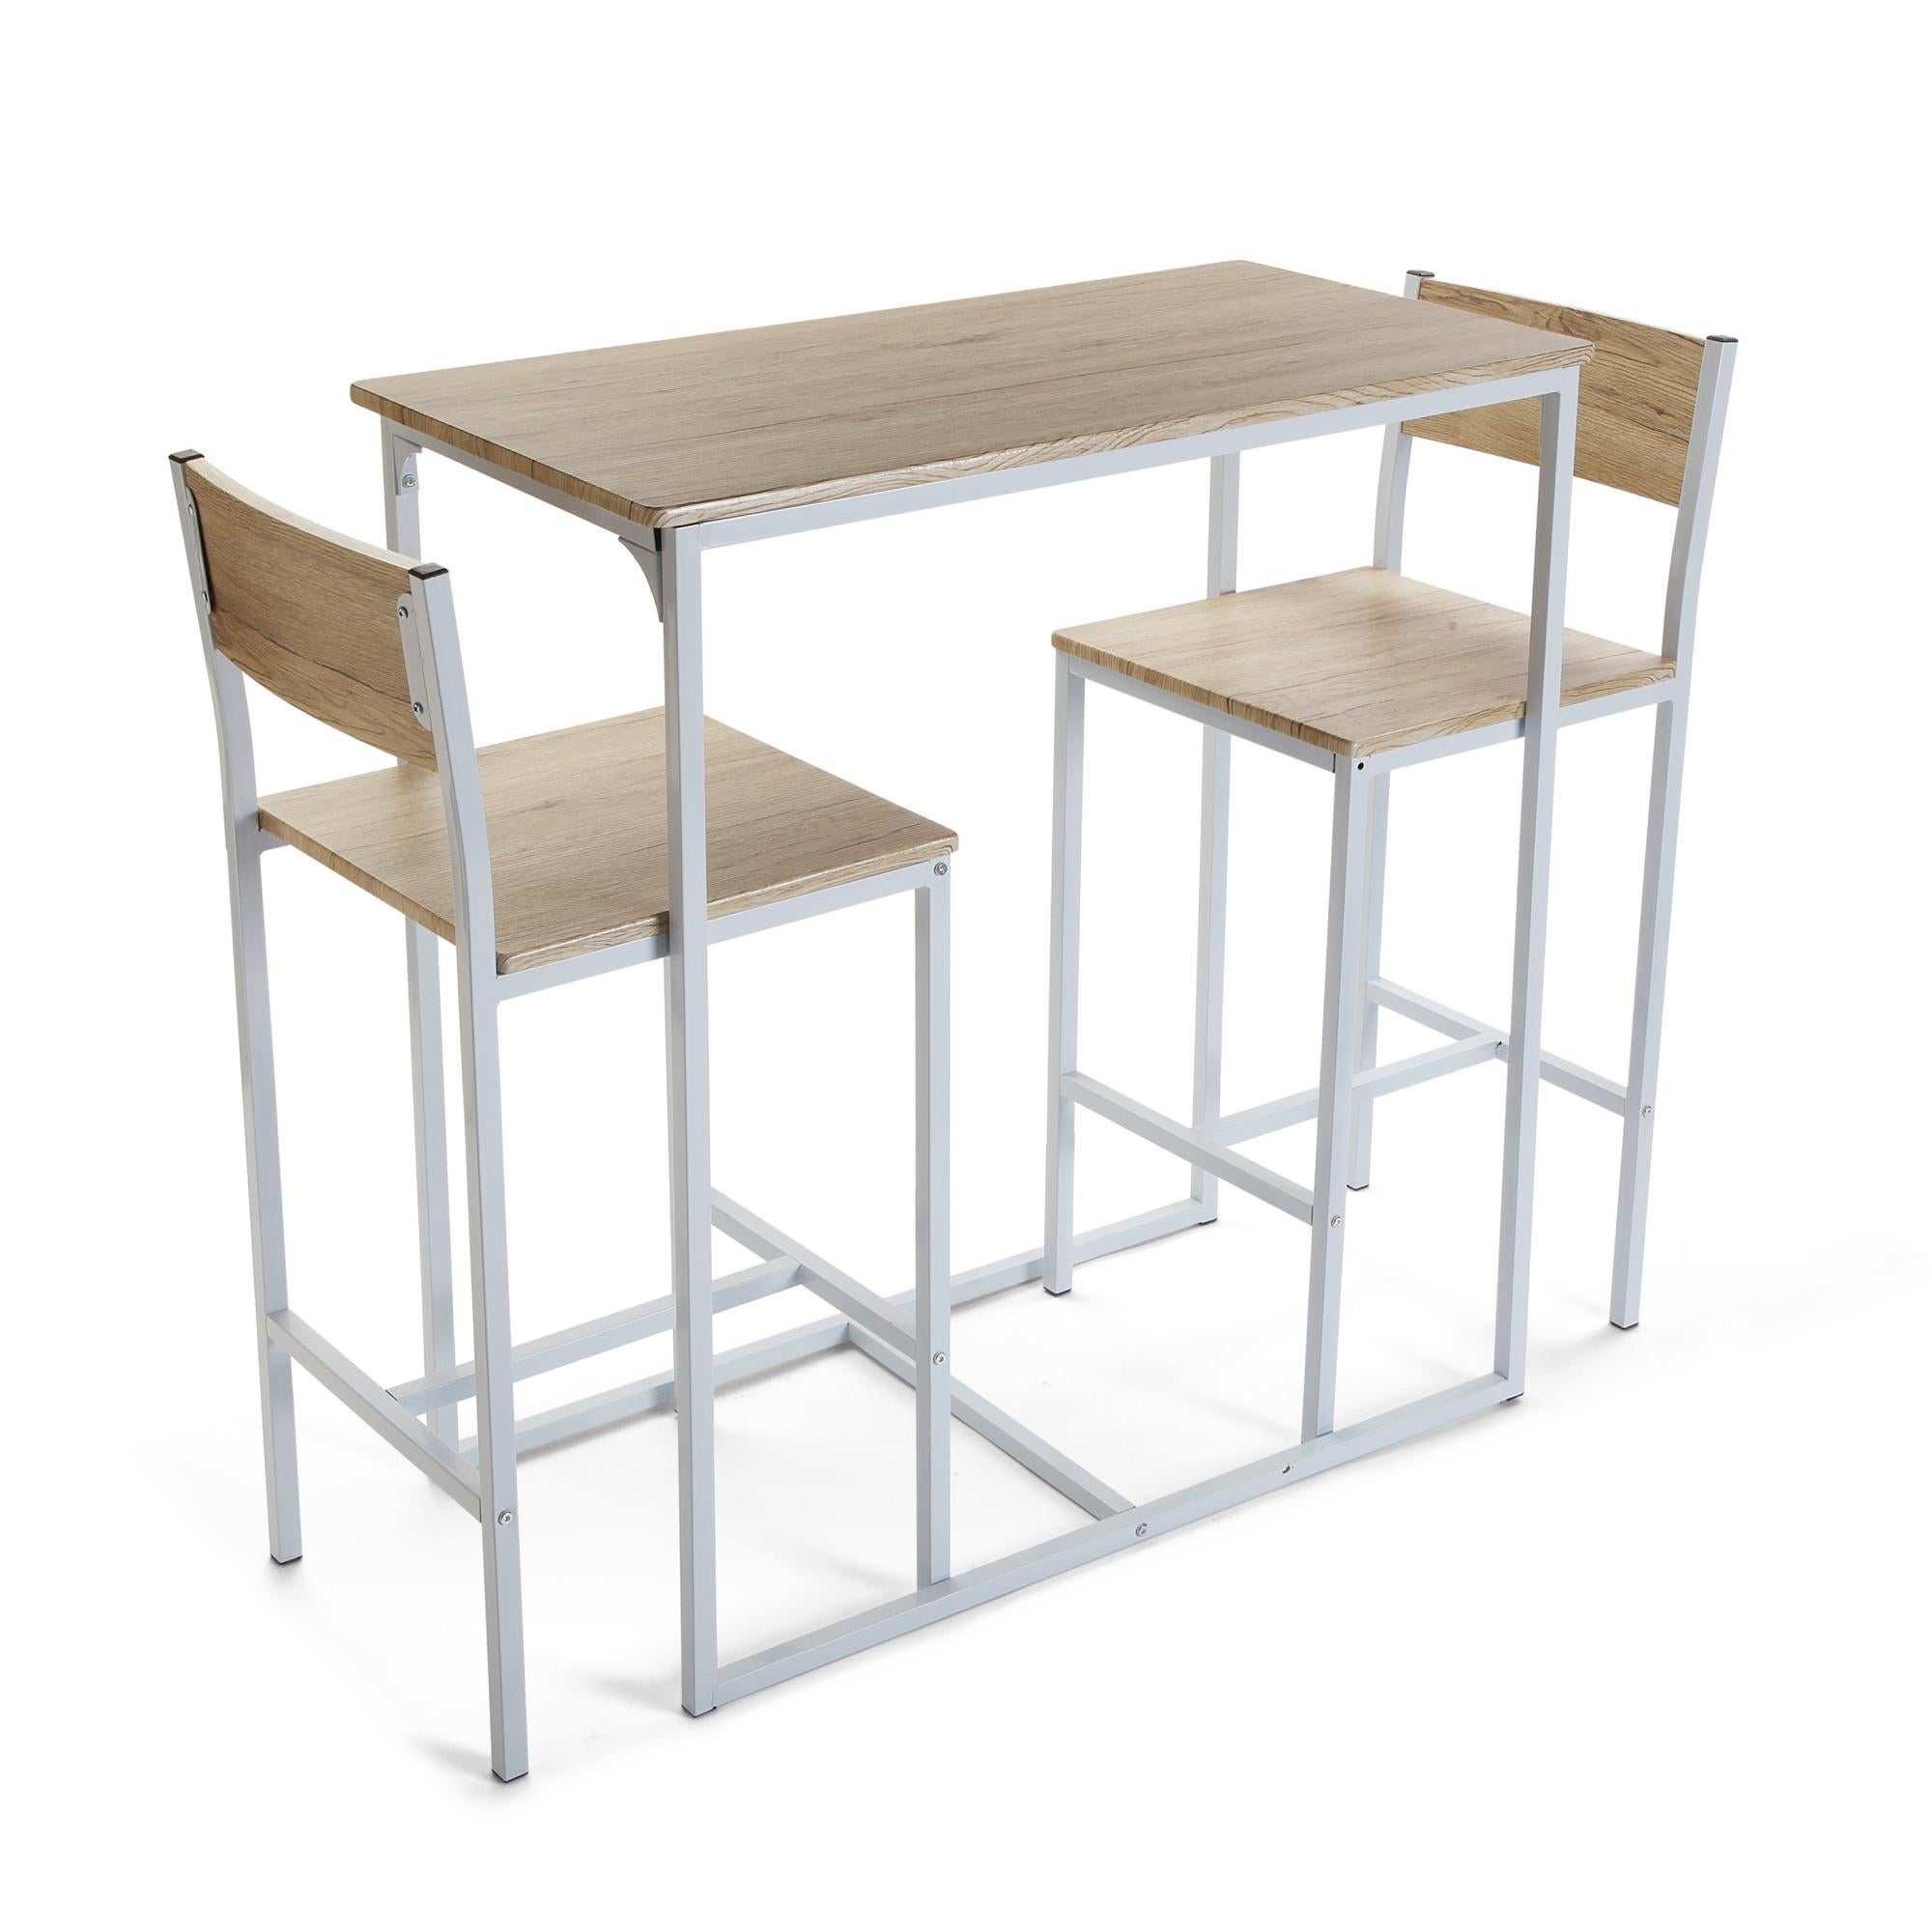 Conjunto de mesa de 97x45x89 cm y 2 taburetes versa en madera mdf beige/blanco